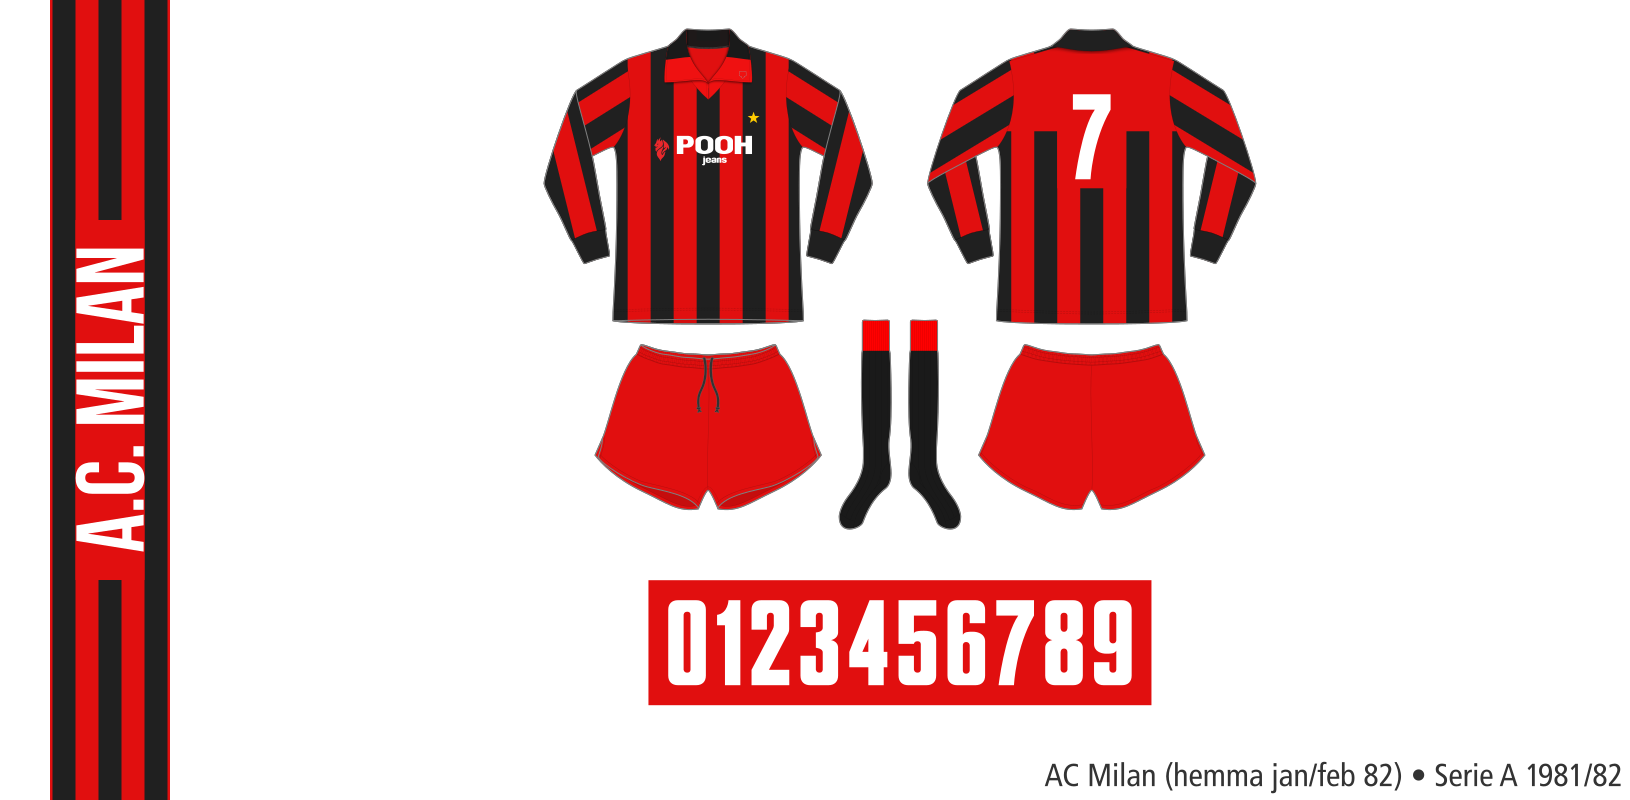 AC Milan 1981/82 (hemma januari/februari 1982)